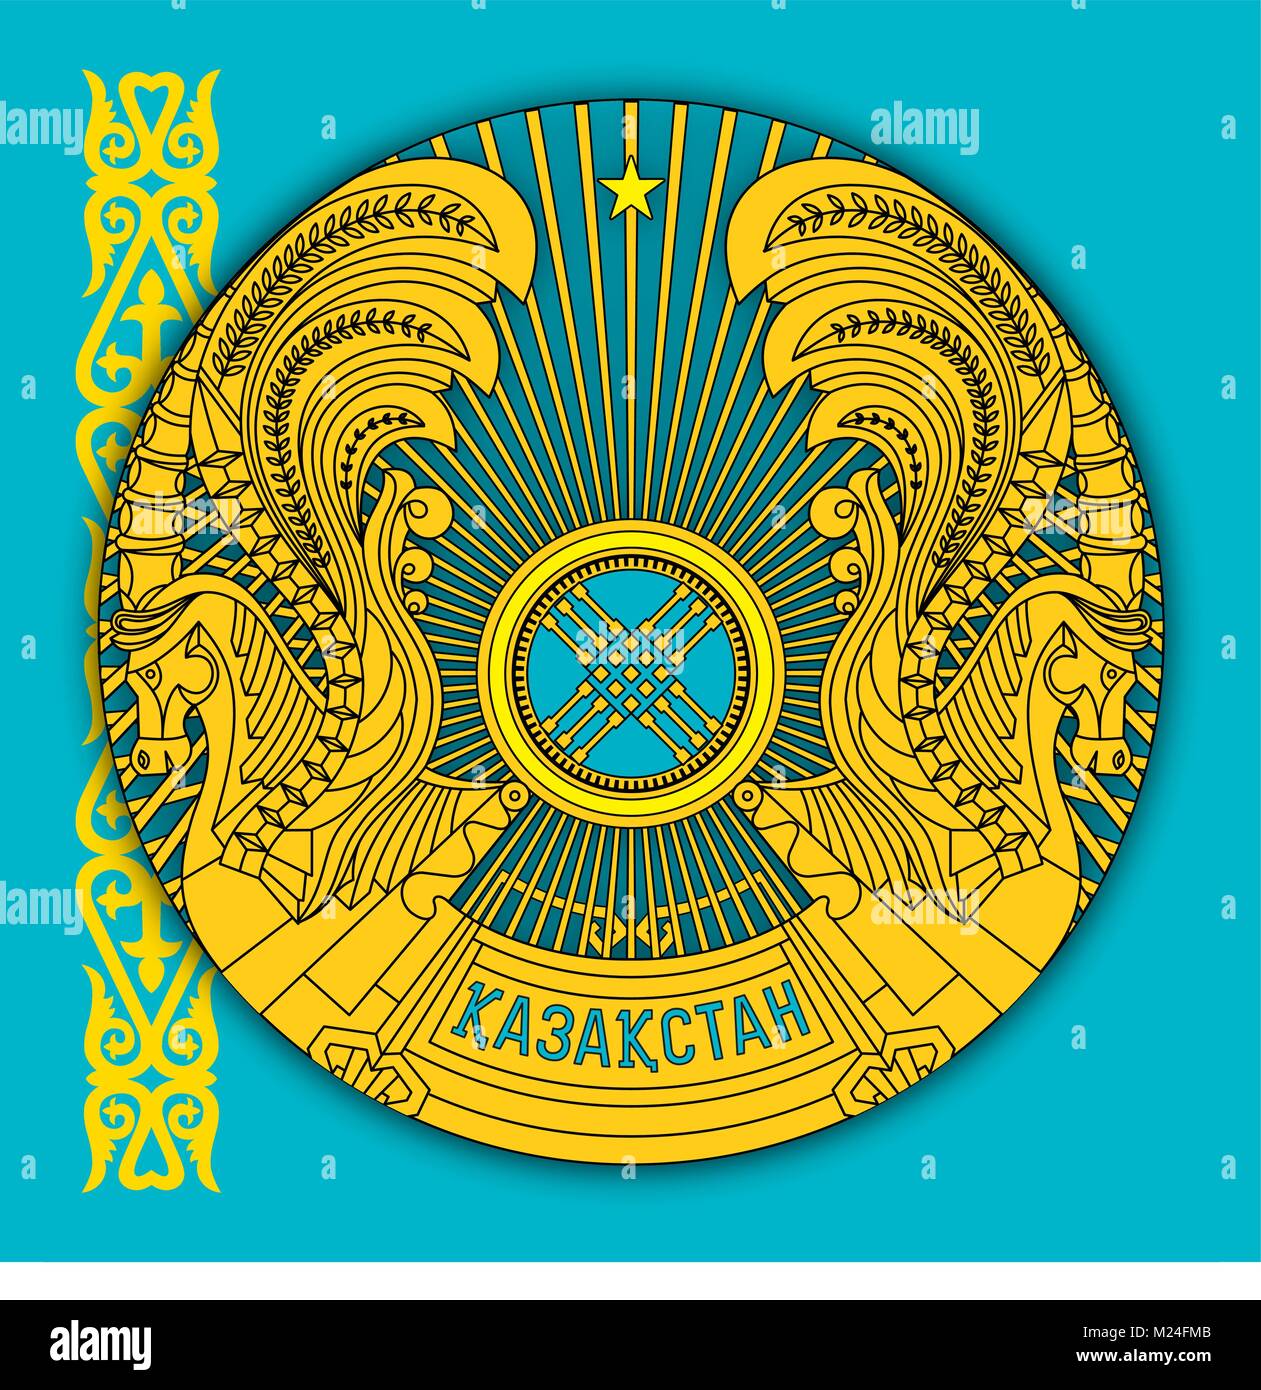 kazakhstan wavy flag and coat, Stock vector